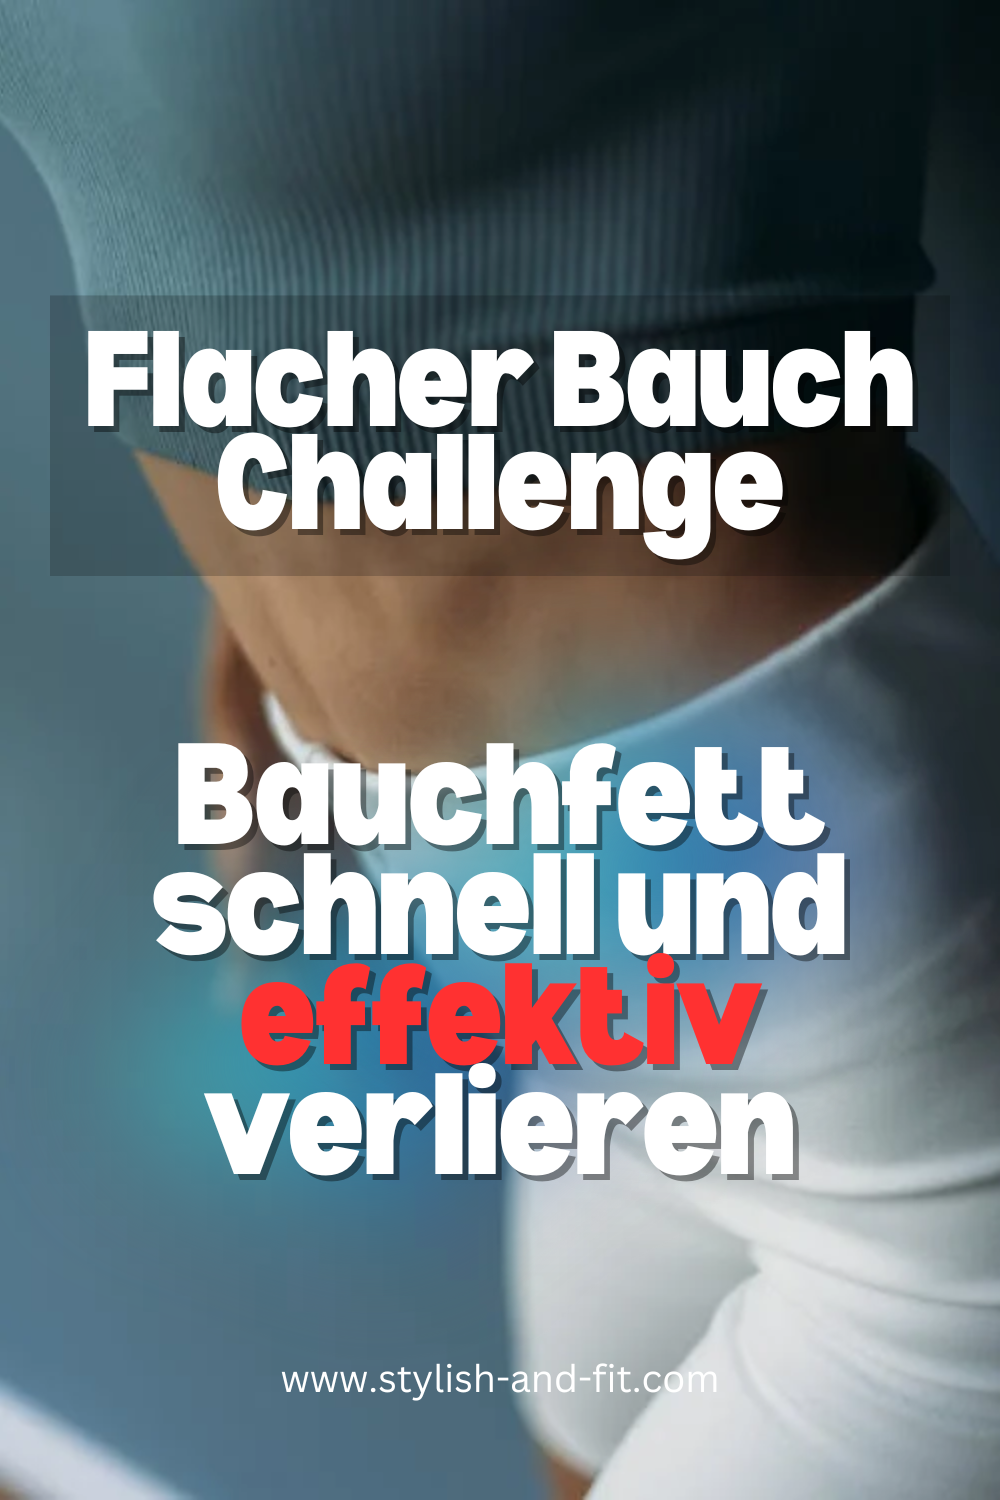 Flacher Bauch Challenge